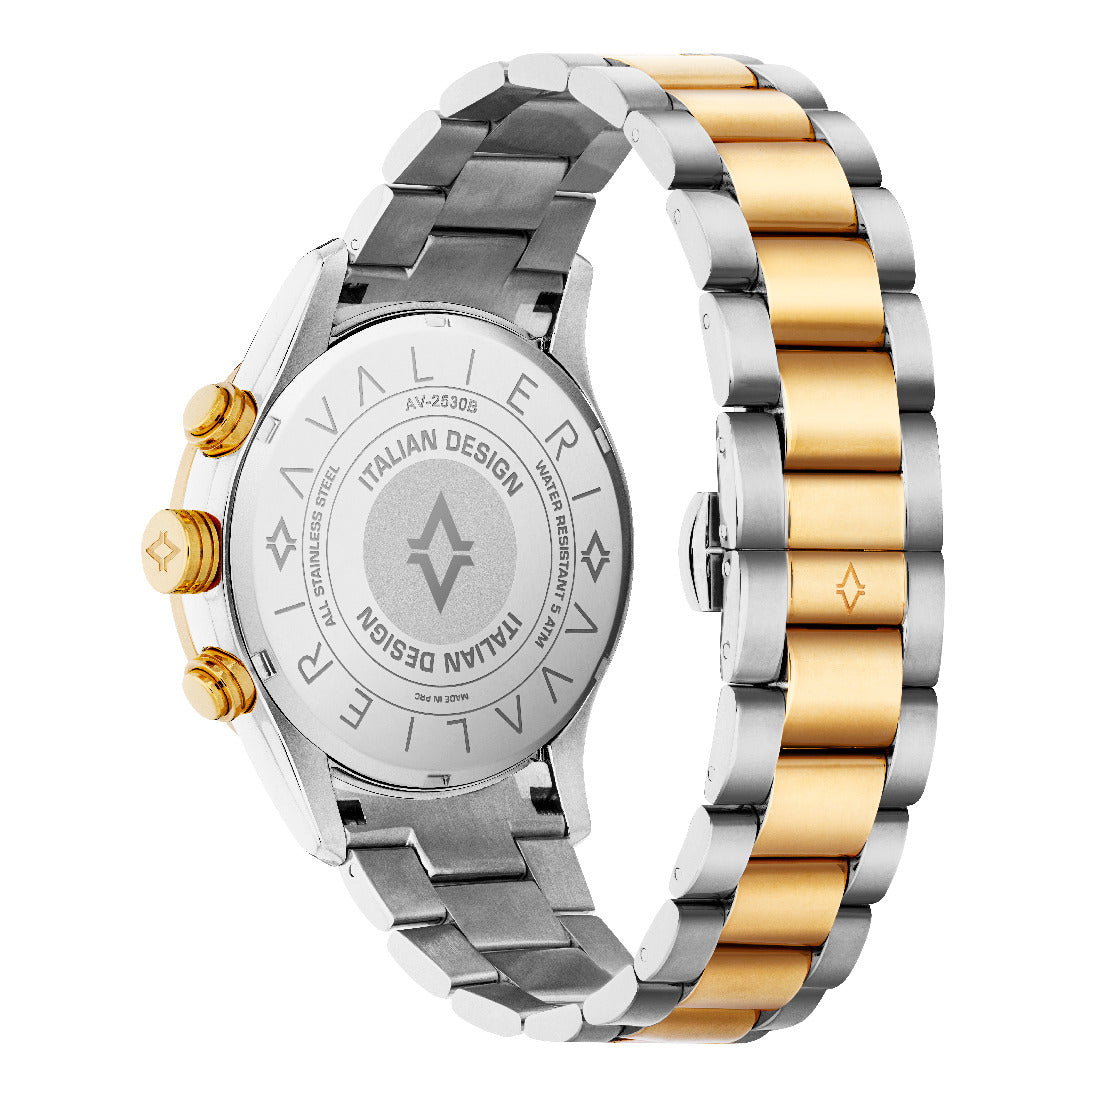 Avalieri Men's Quartz Watch, White Dial - AV-2530B